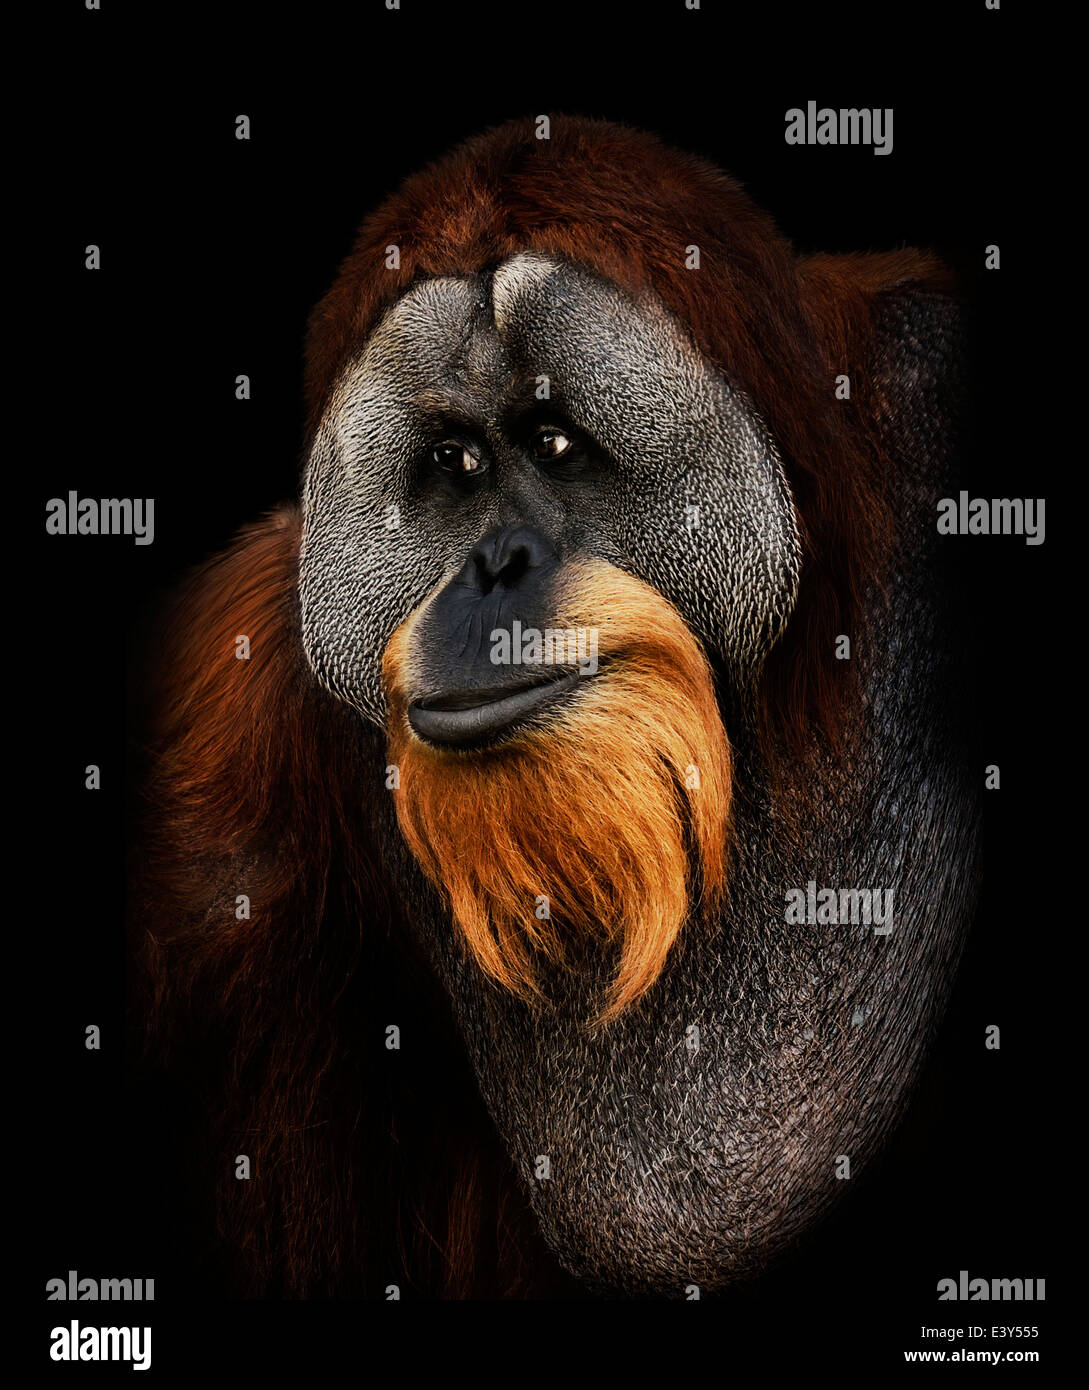 Portrait de l'orang-outan sur fond noir Banque D'Images